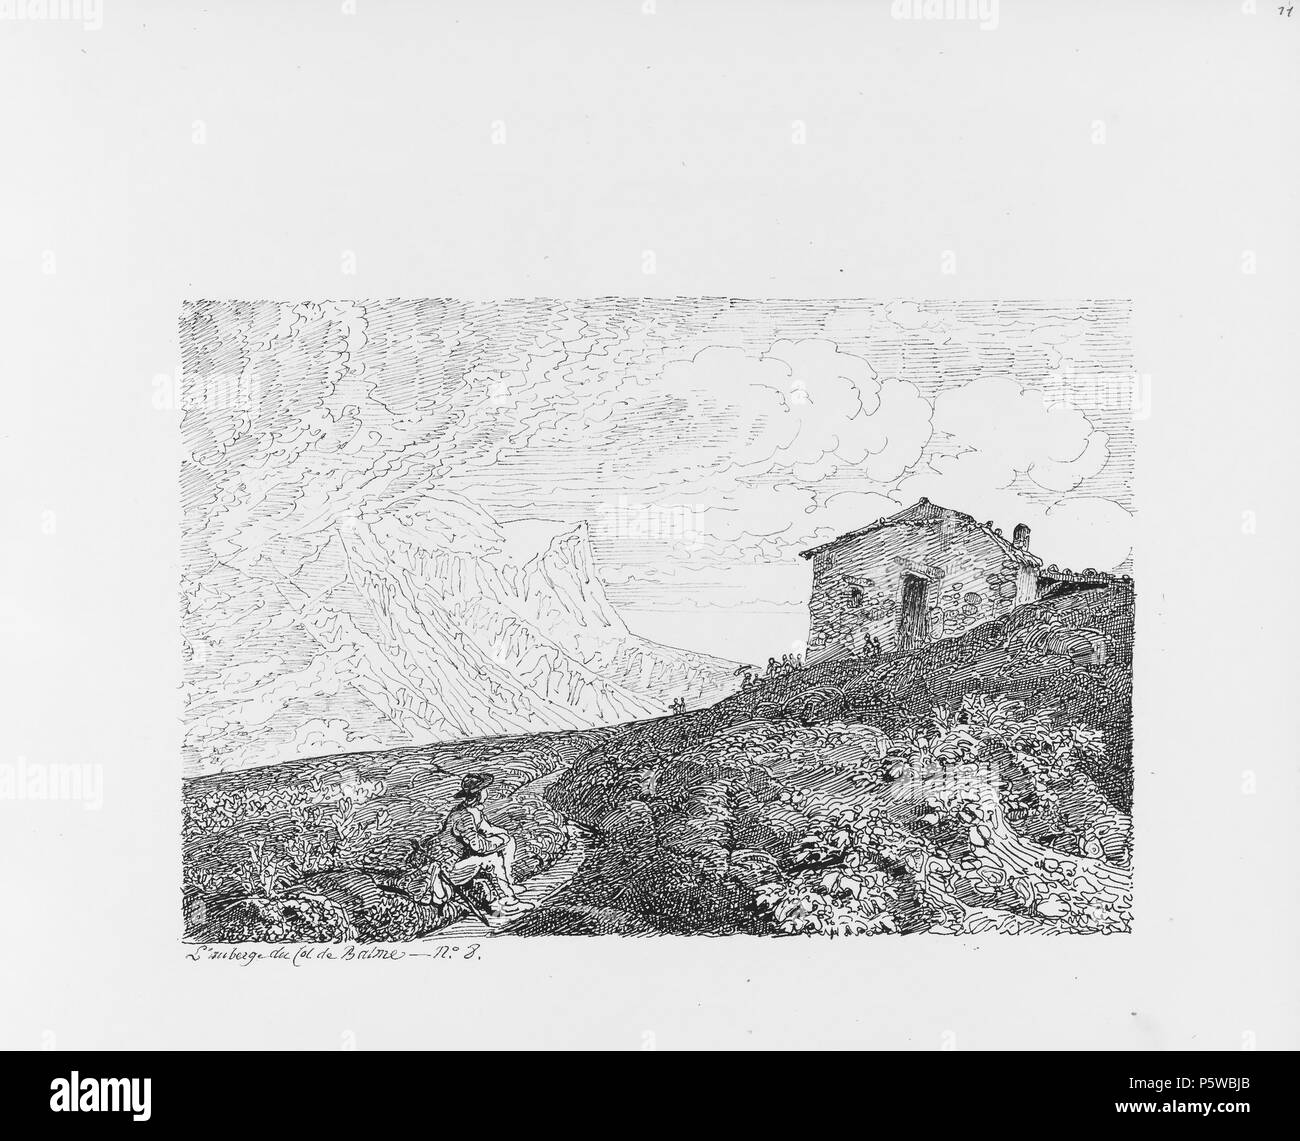 322 CH-NB-Voyage autour du Mont-Blanc dans les vallées d'Hérens de Zermatt et au Grimsel 1843-nbdig-19161-010 Stock Photo